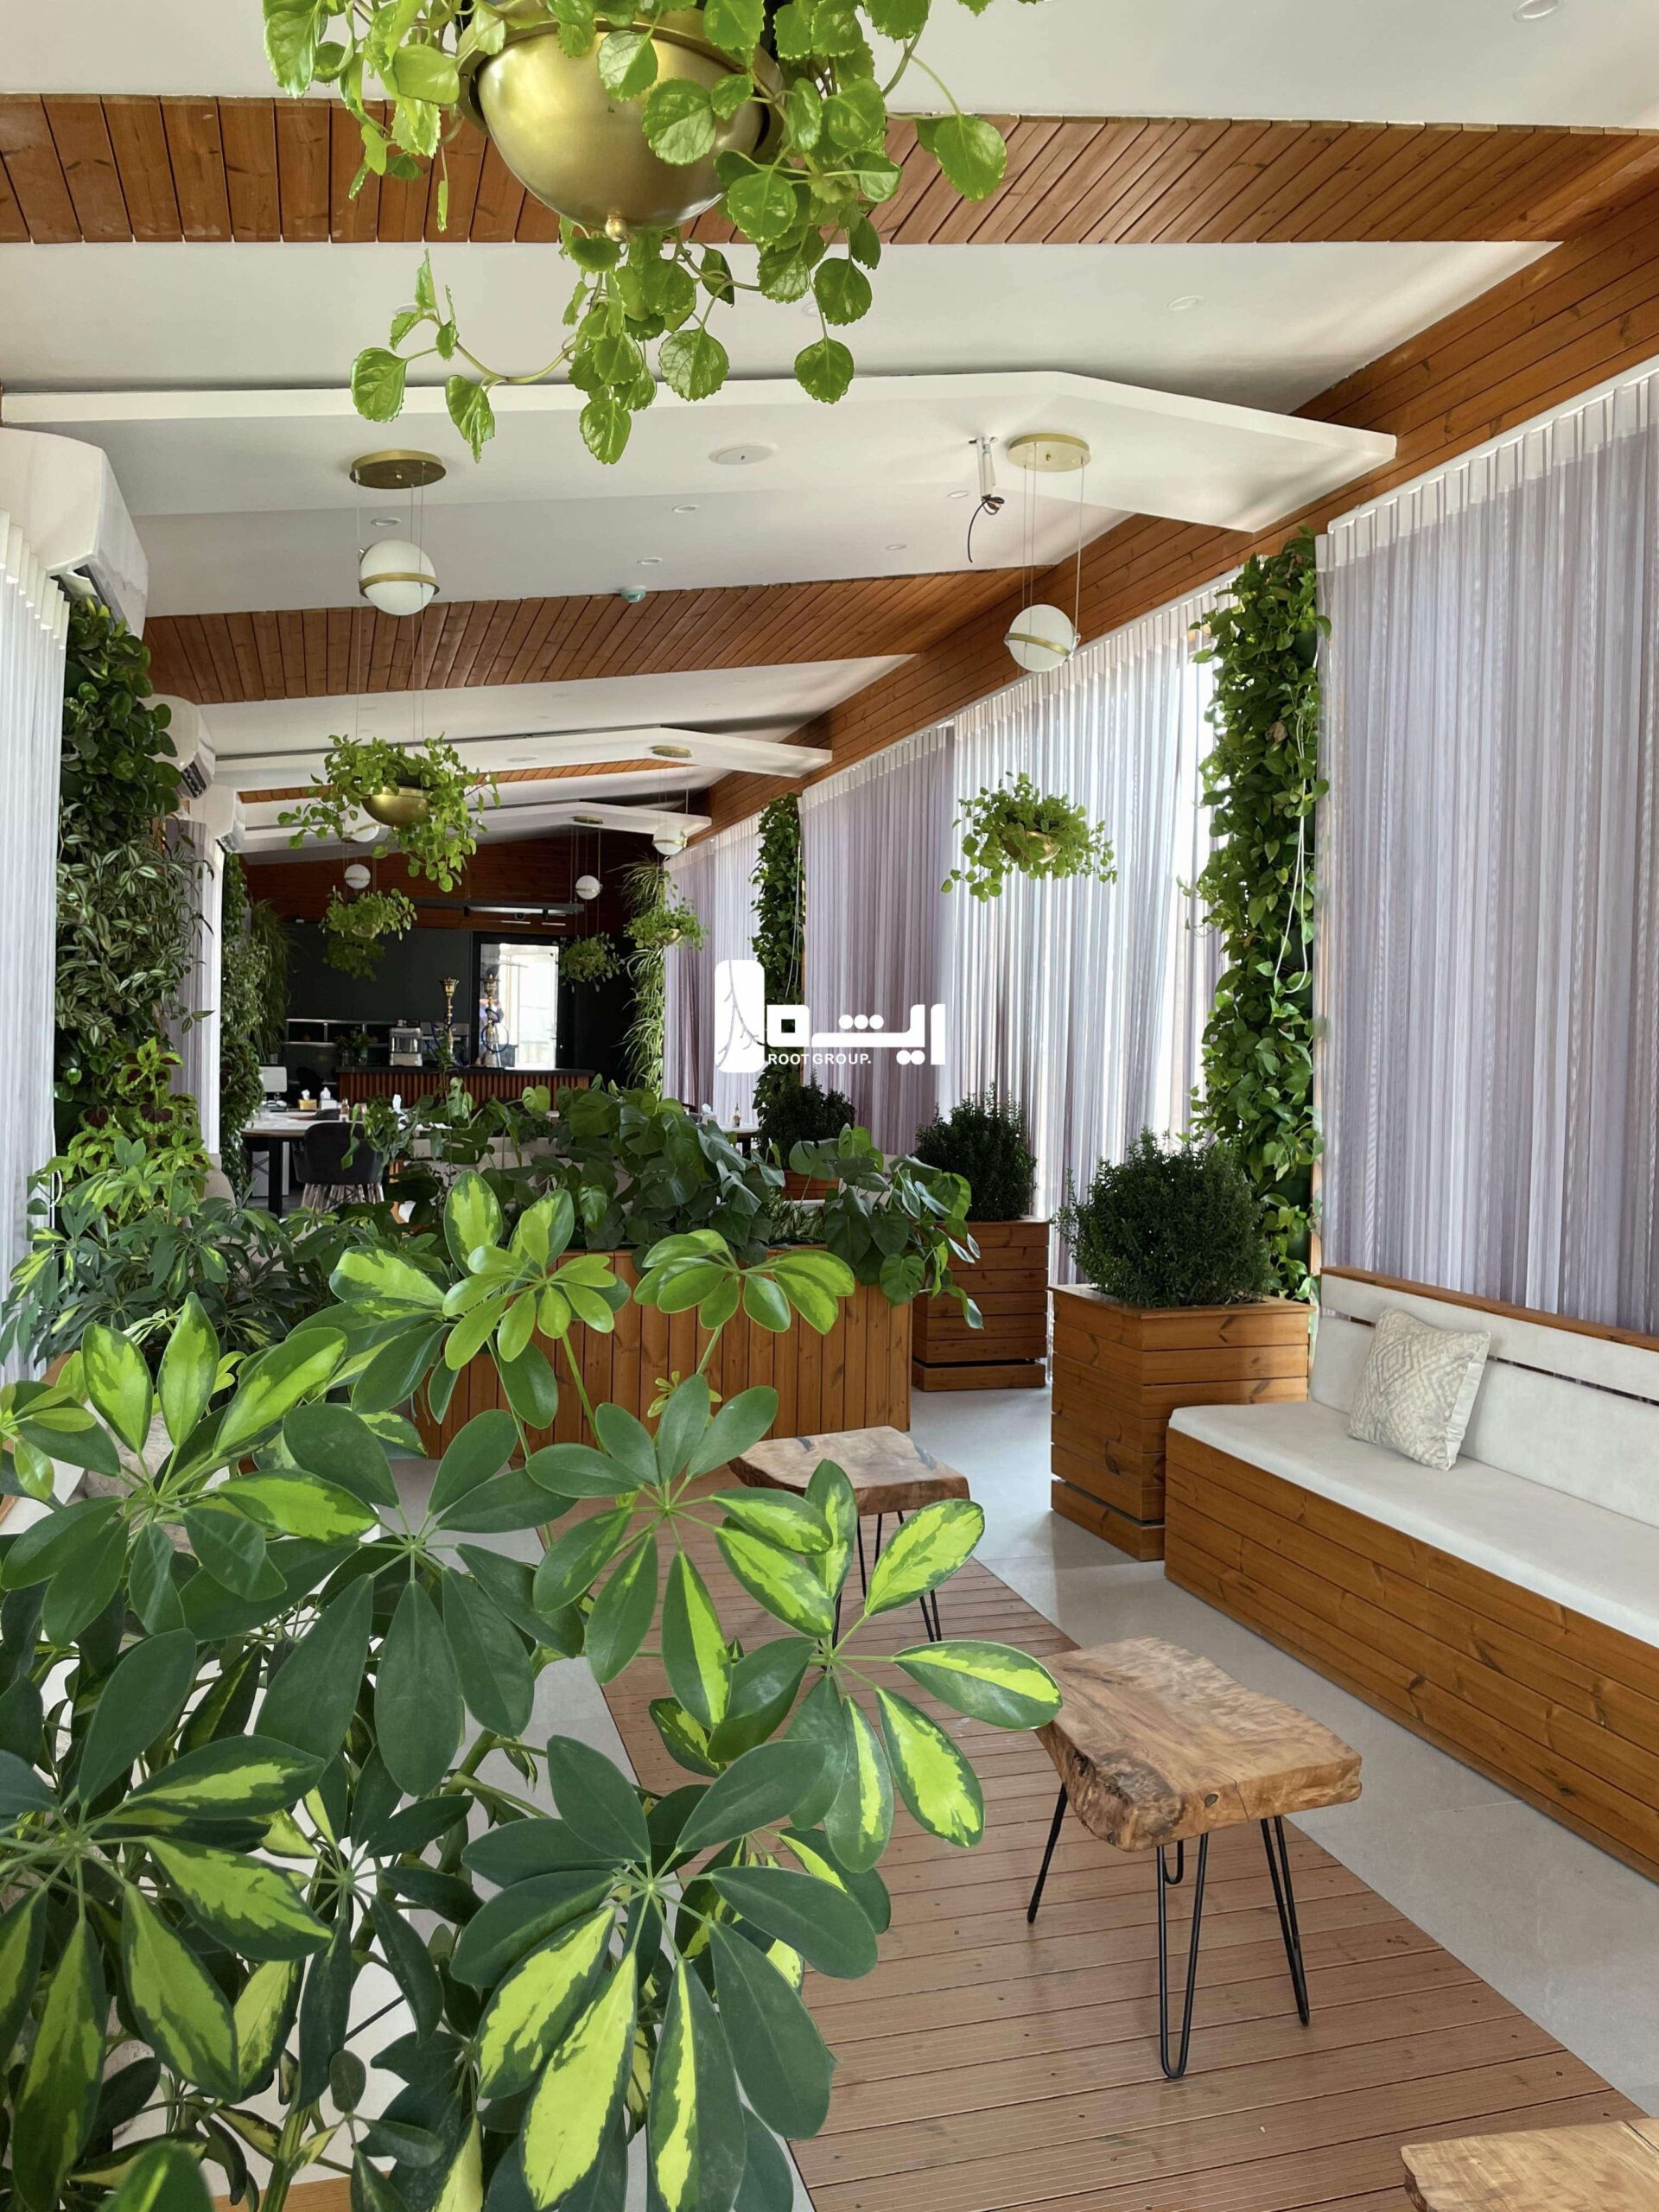 دکور سبز فضای داخلی رستوران یک شرکت توسط گروه ریشه